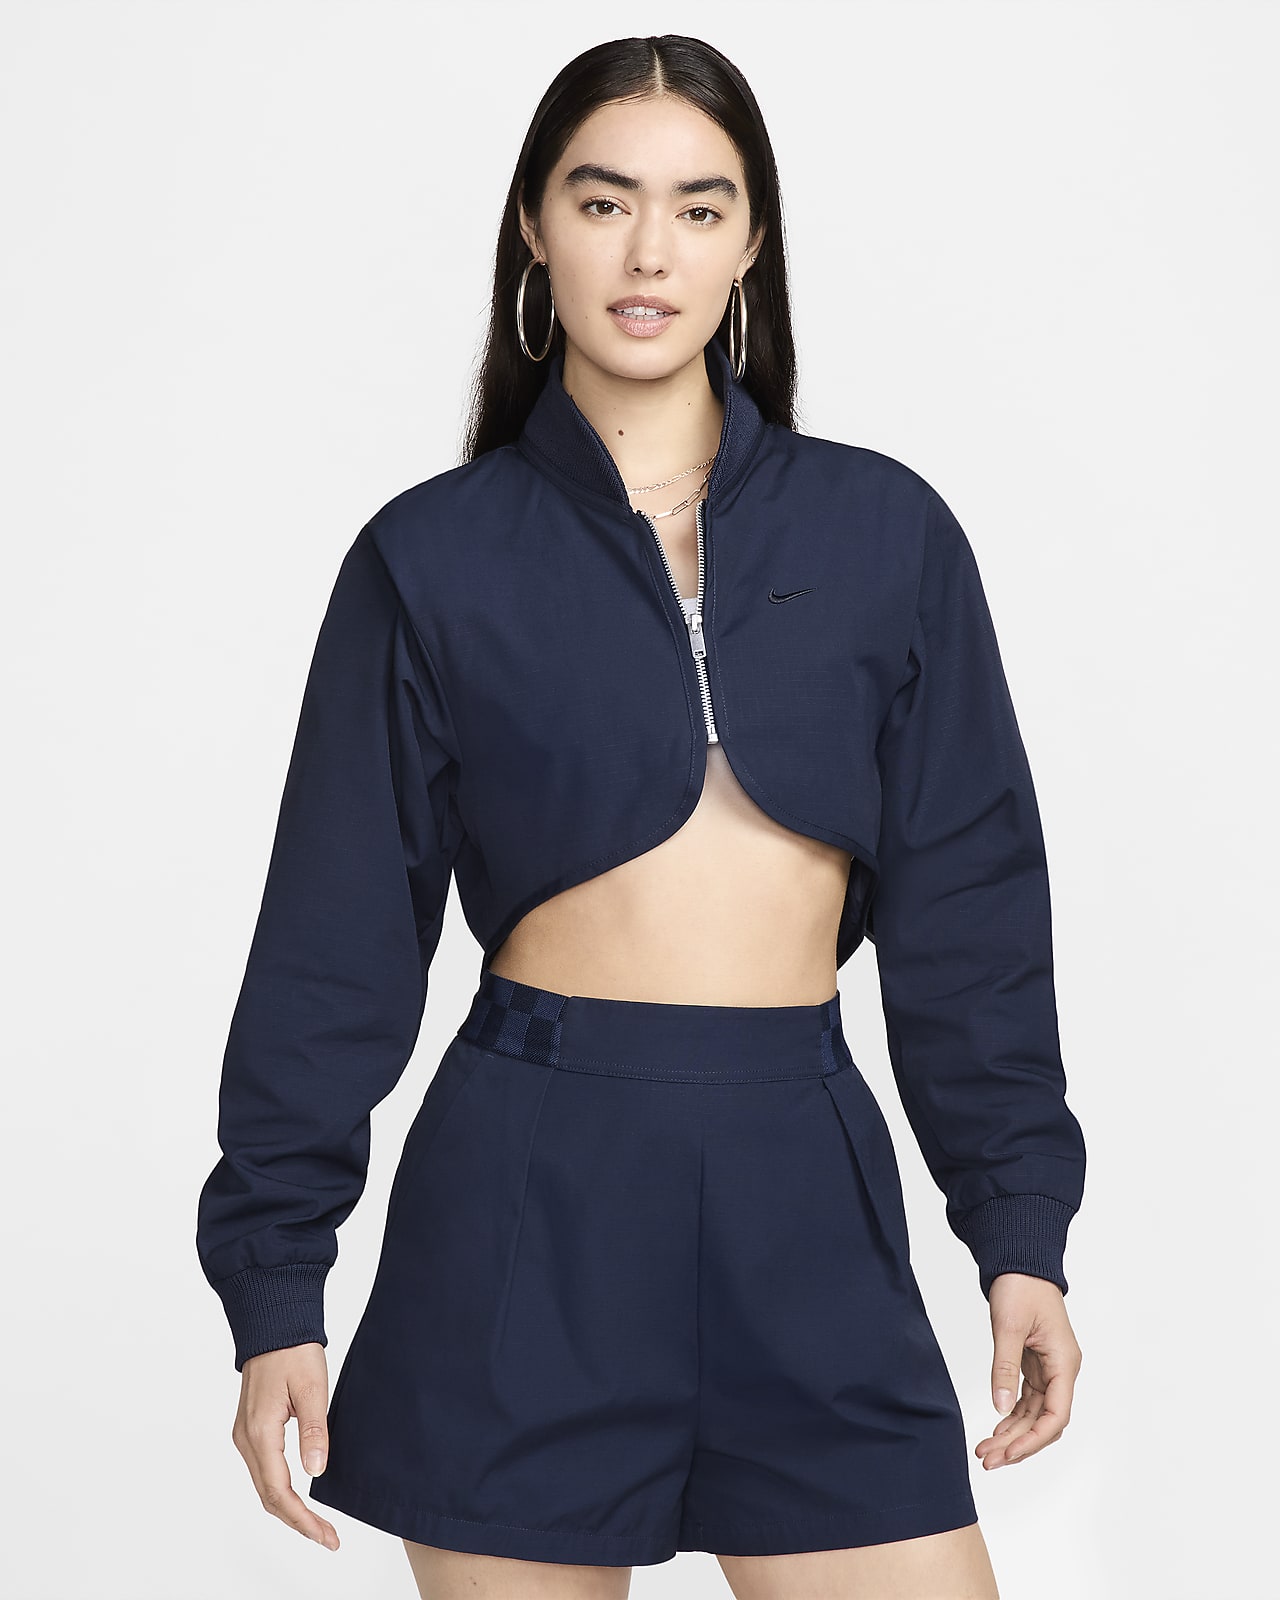 Nike Sportswear Collection Women's Cropped Full-Zip Jacket